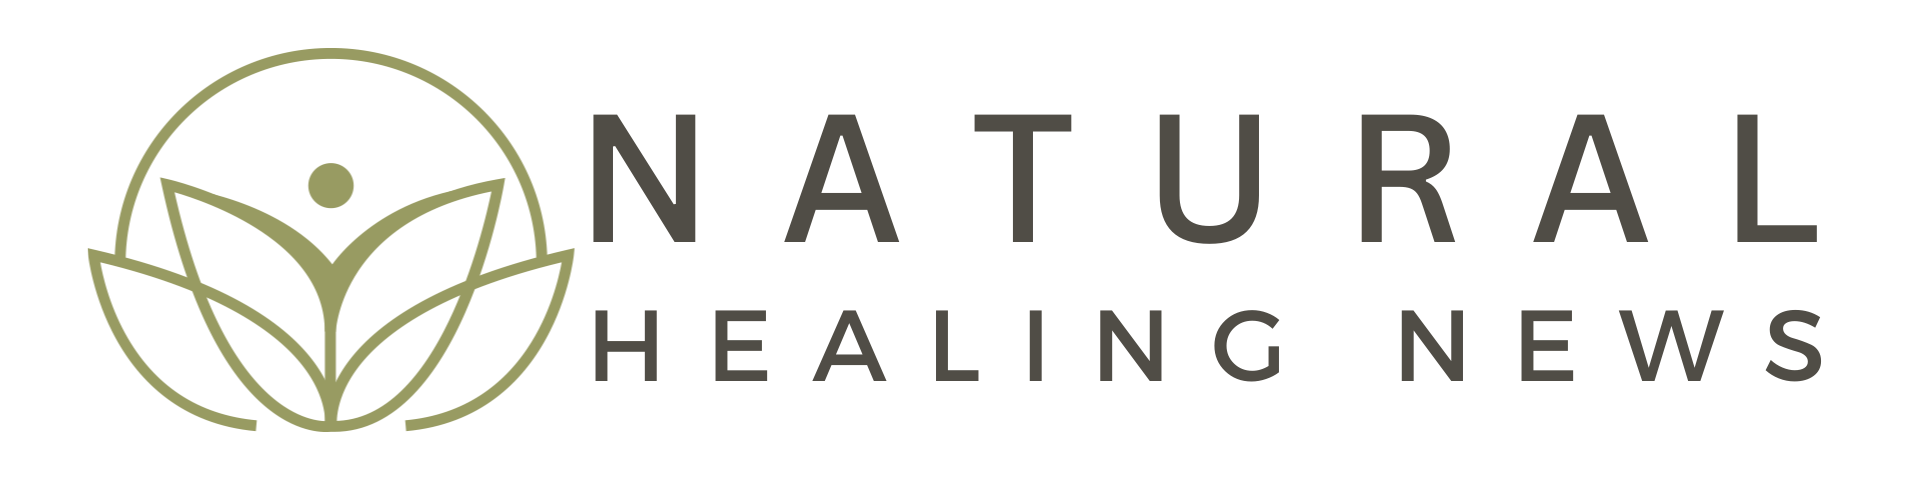 Natural Healing News